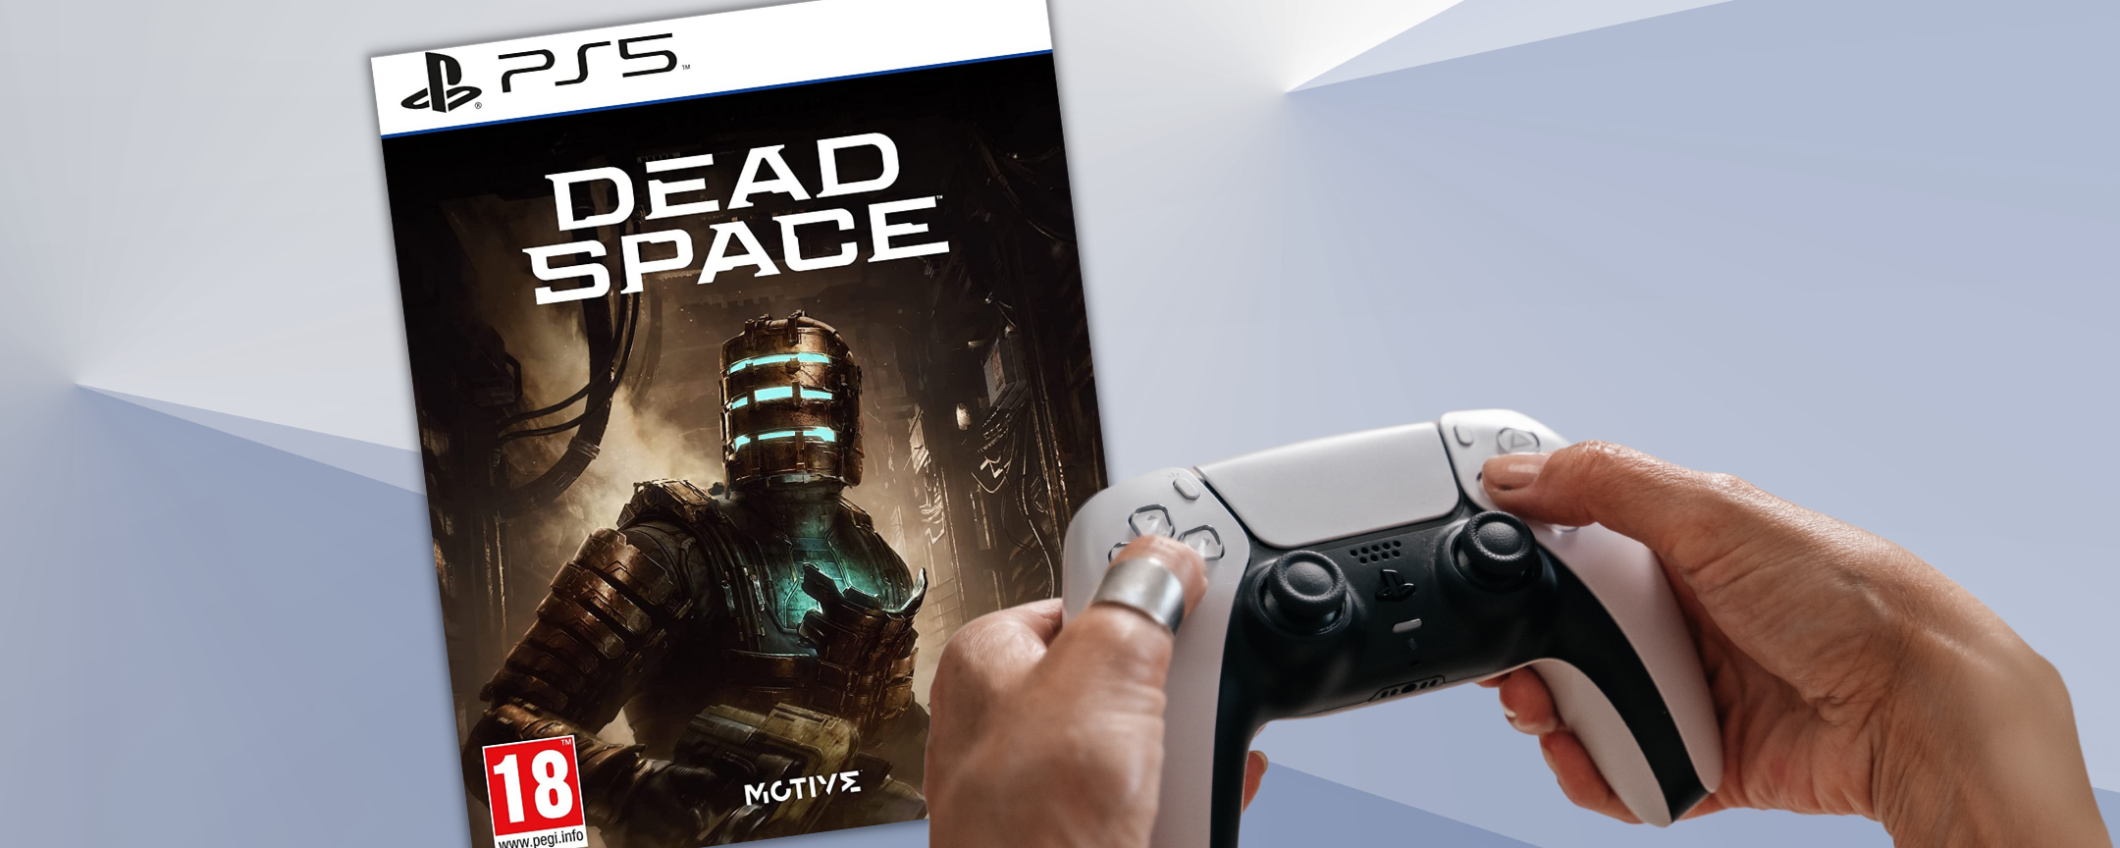 Dead Space: la versione per PS5 scontata del 63% su Amazon (solo 29€)